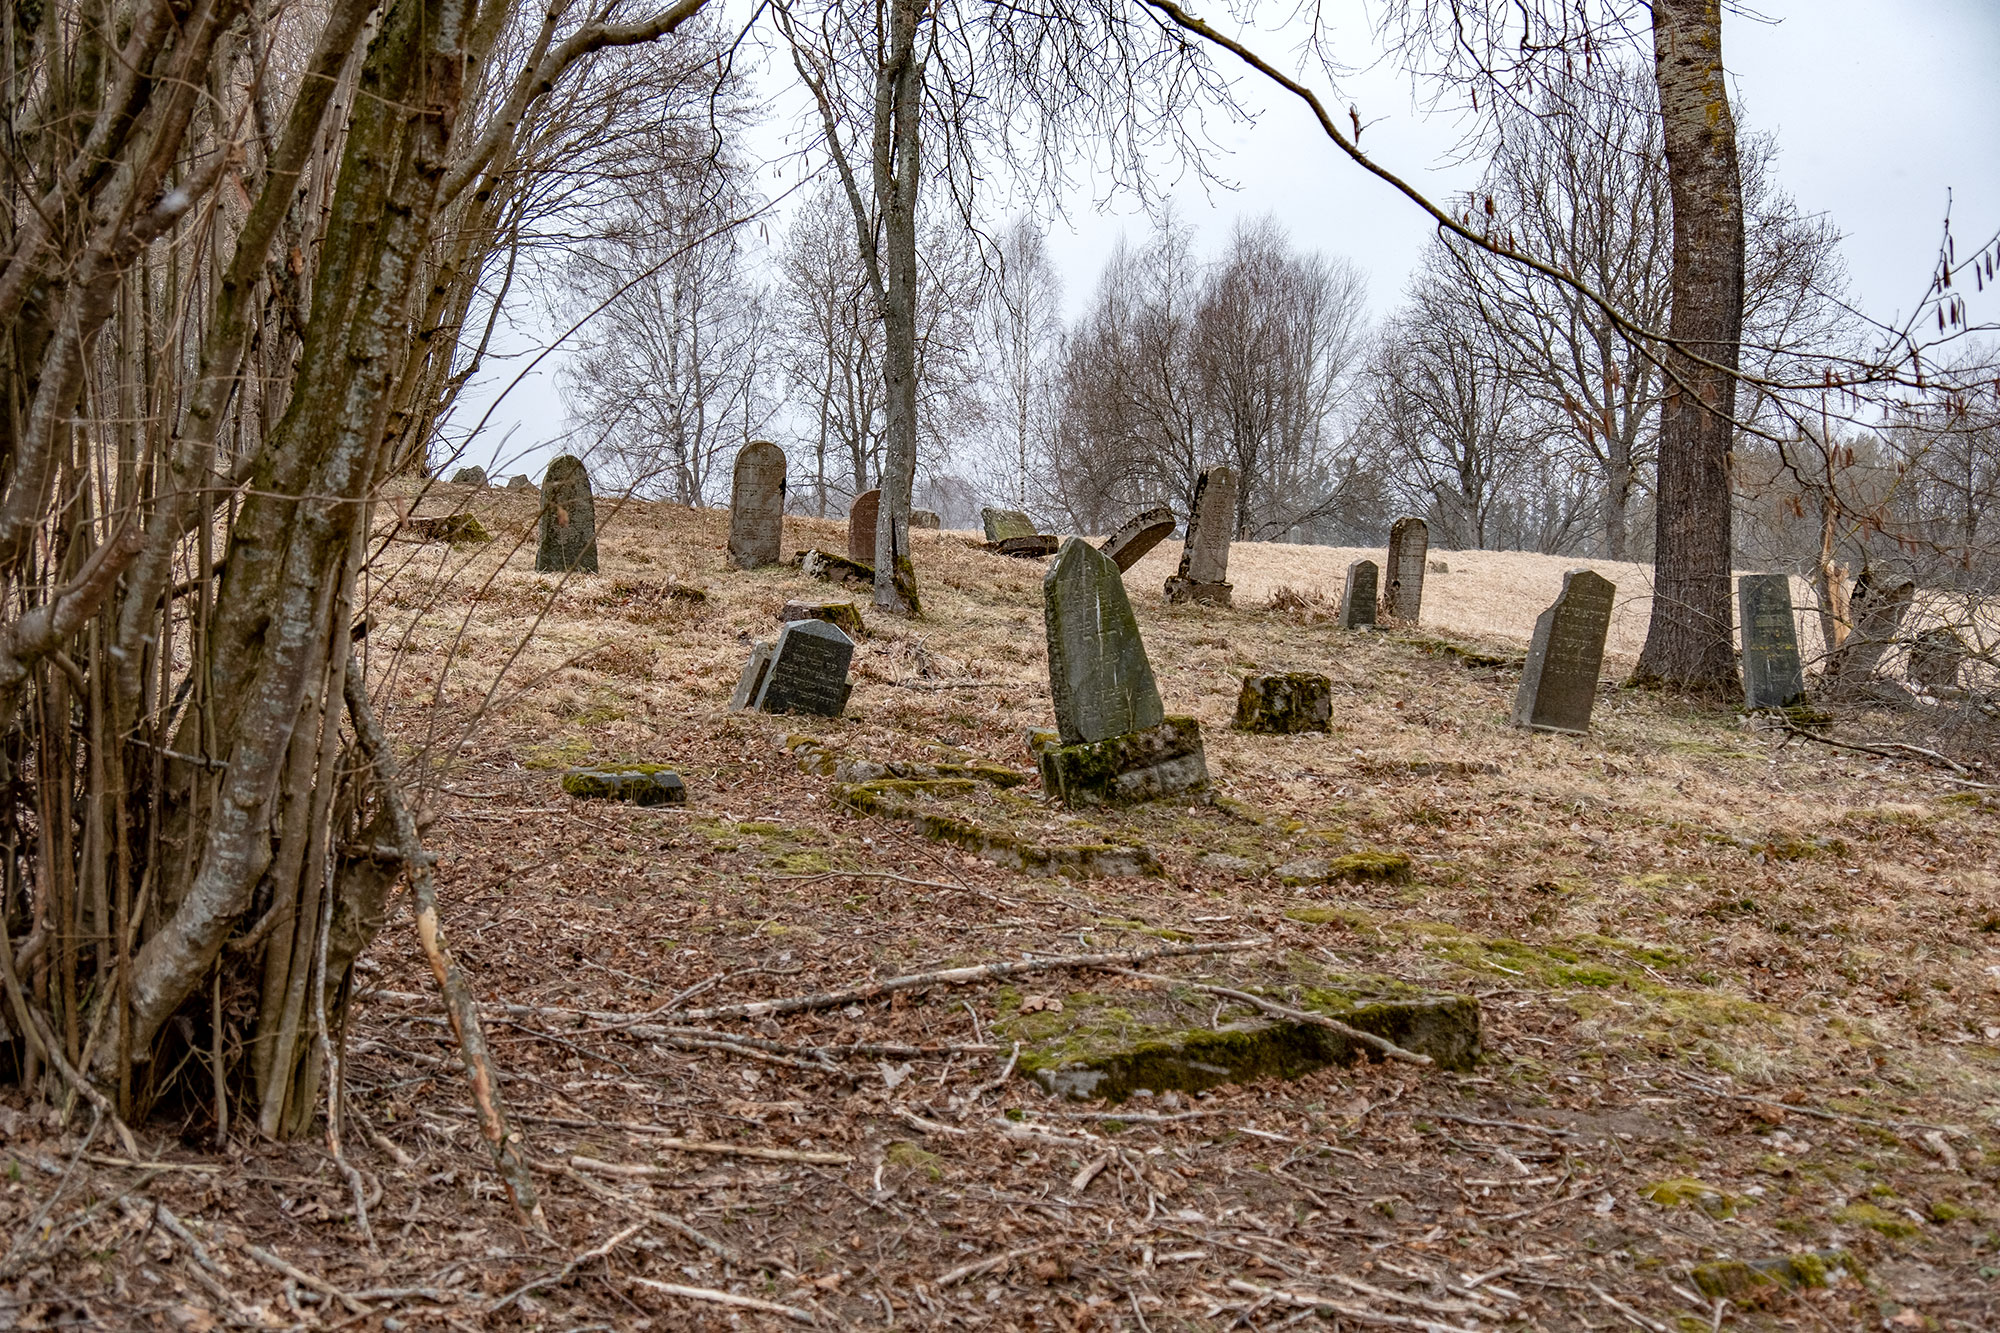 Skaudvilė - Jewish cemetery